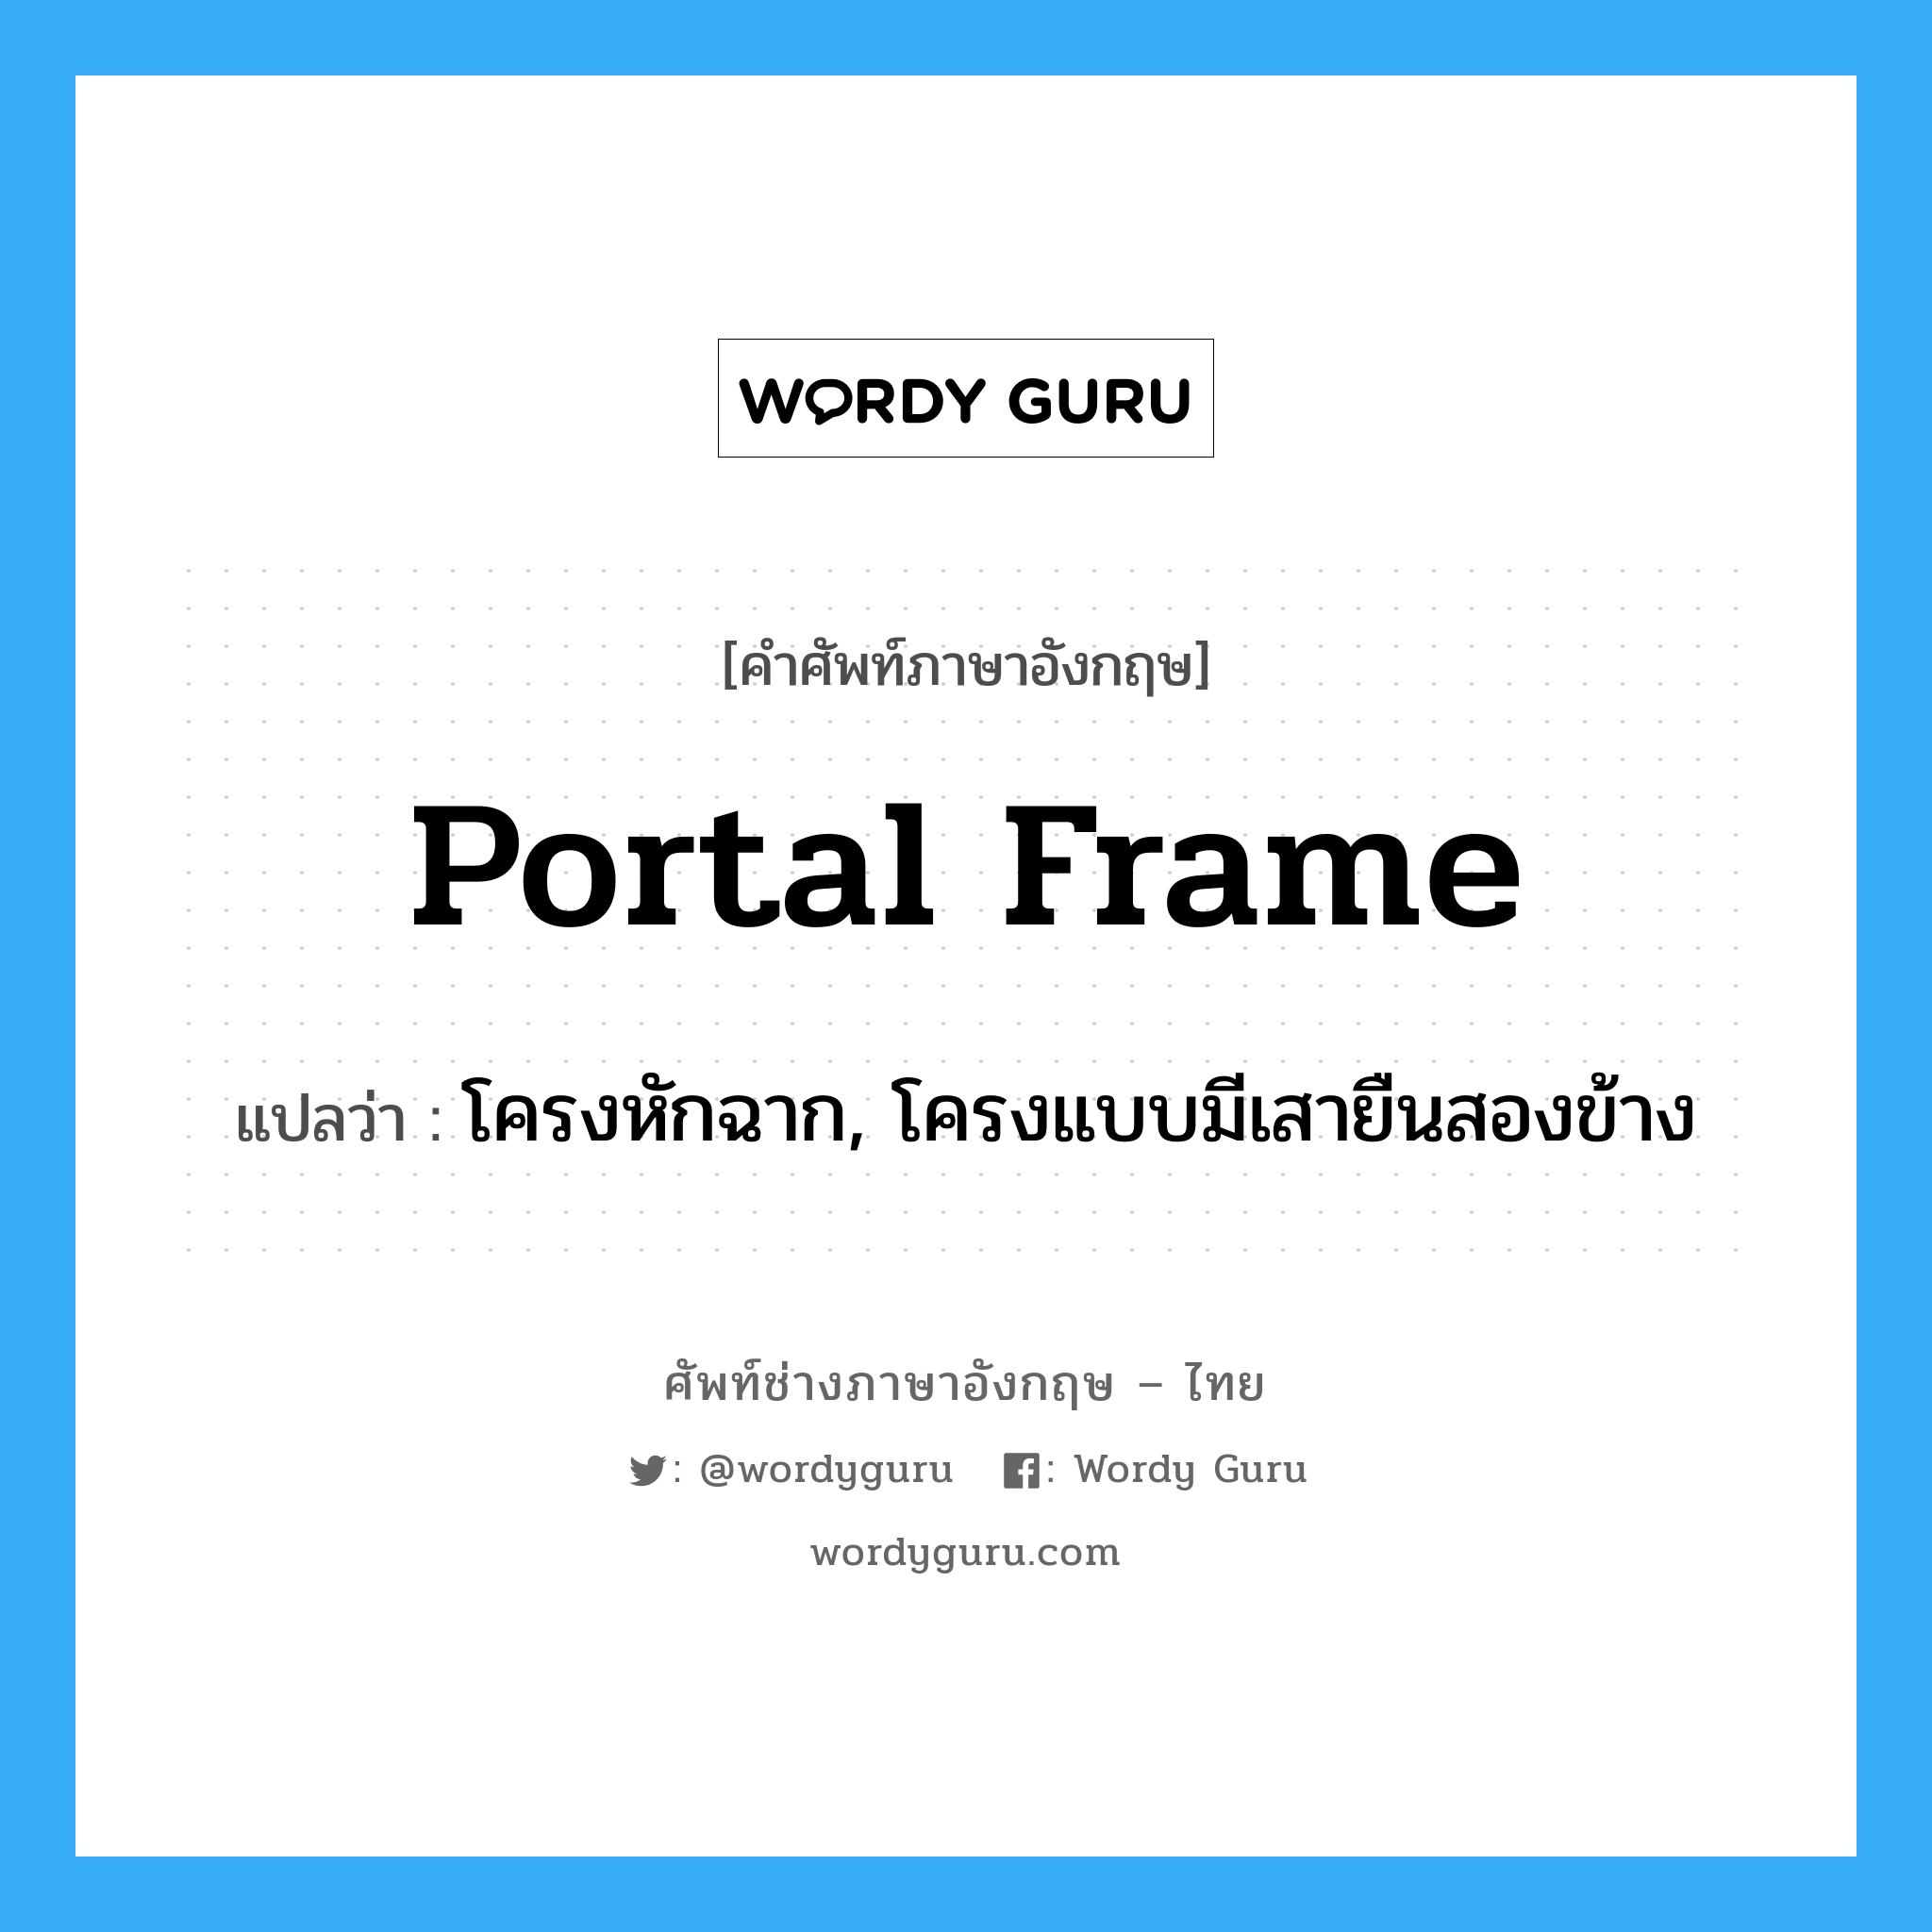 portal frame แปลว่า?, คำศัพท์ช่างภาษาอังกฤษ - ไทย portal frame คำศัพท์ภาษาอังกฤษ portal frame แปลว่า โครงหักฉาก, โครงแบบมีเสายืนสองข้าง